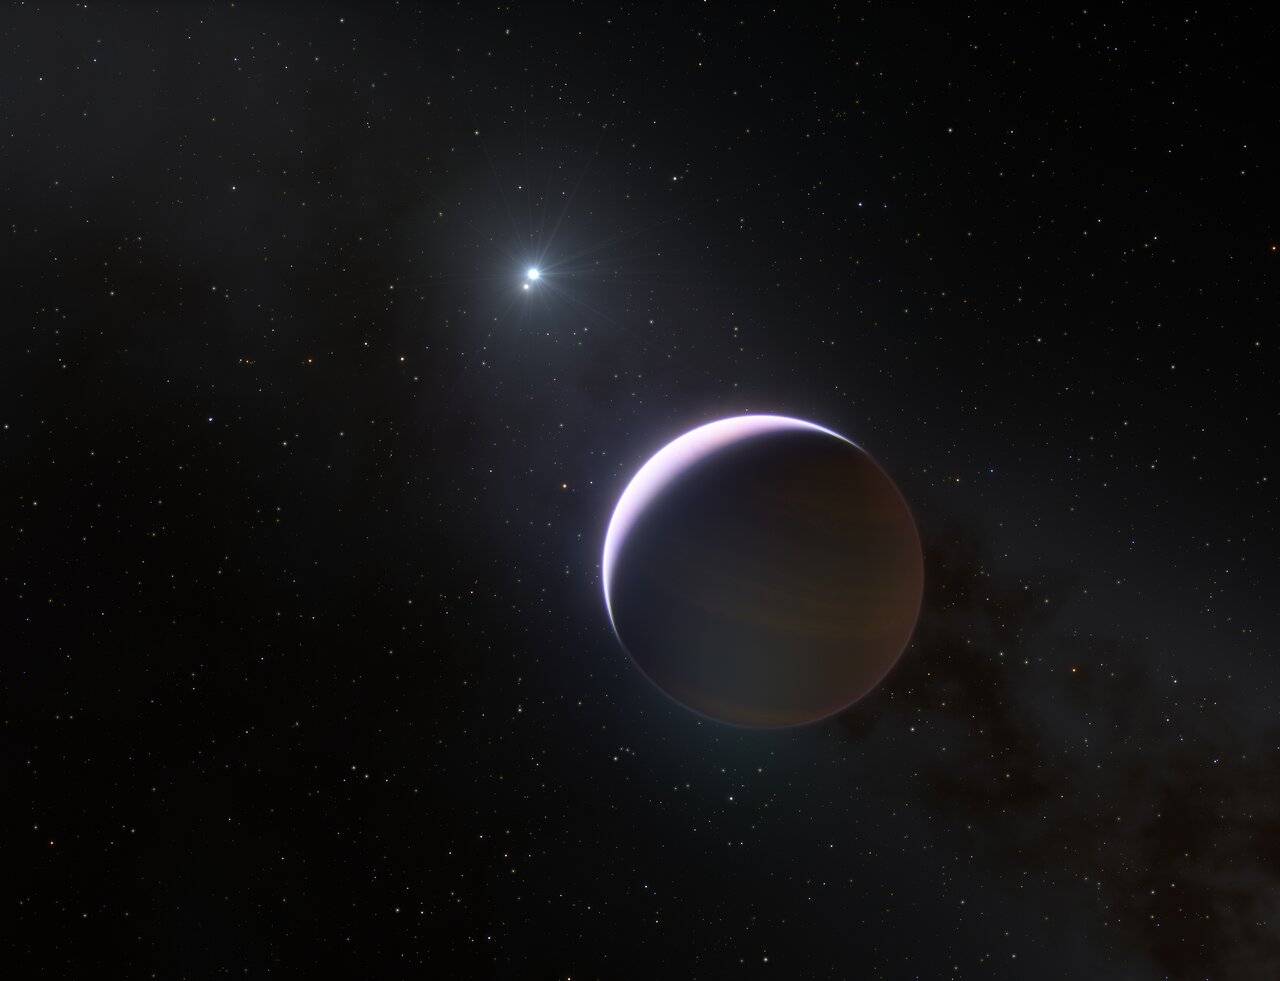 Ilustración del planeta descubierto (b Centauri b) orbitando el sistema binario b Centauri. ESO: L. Calçada